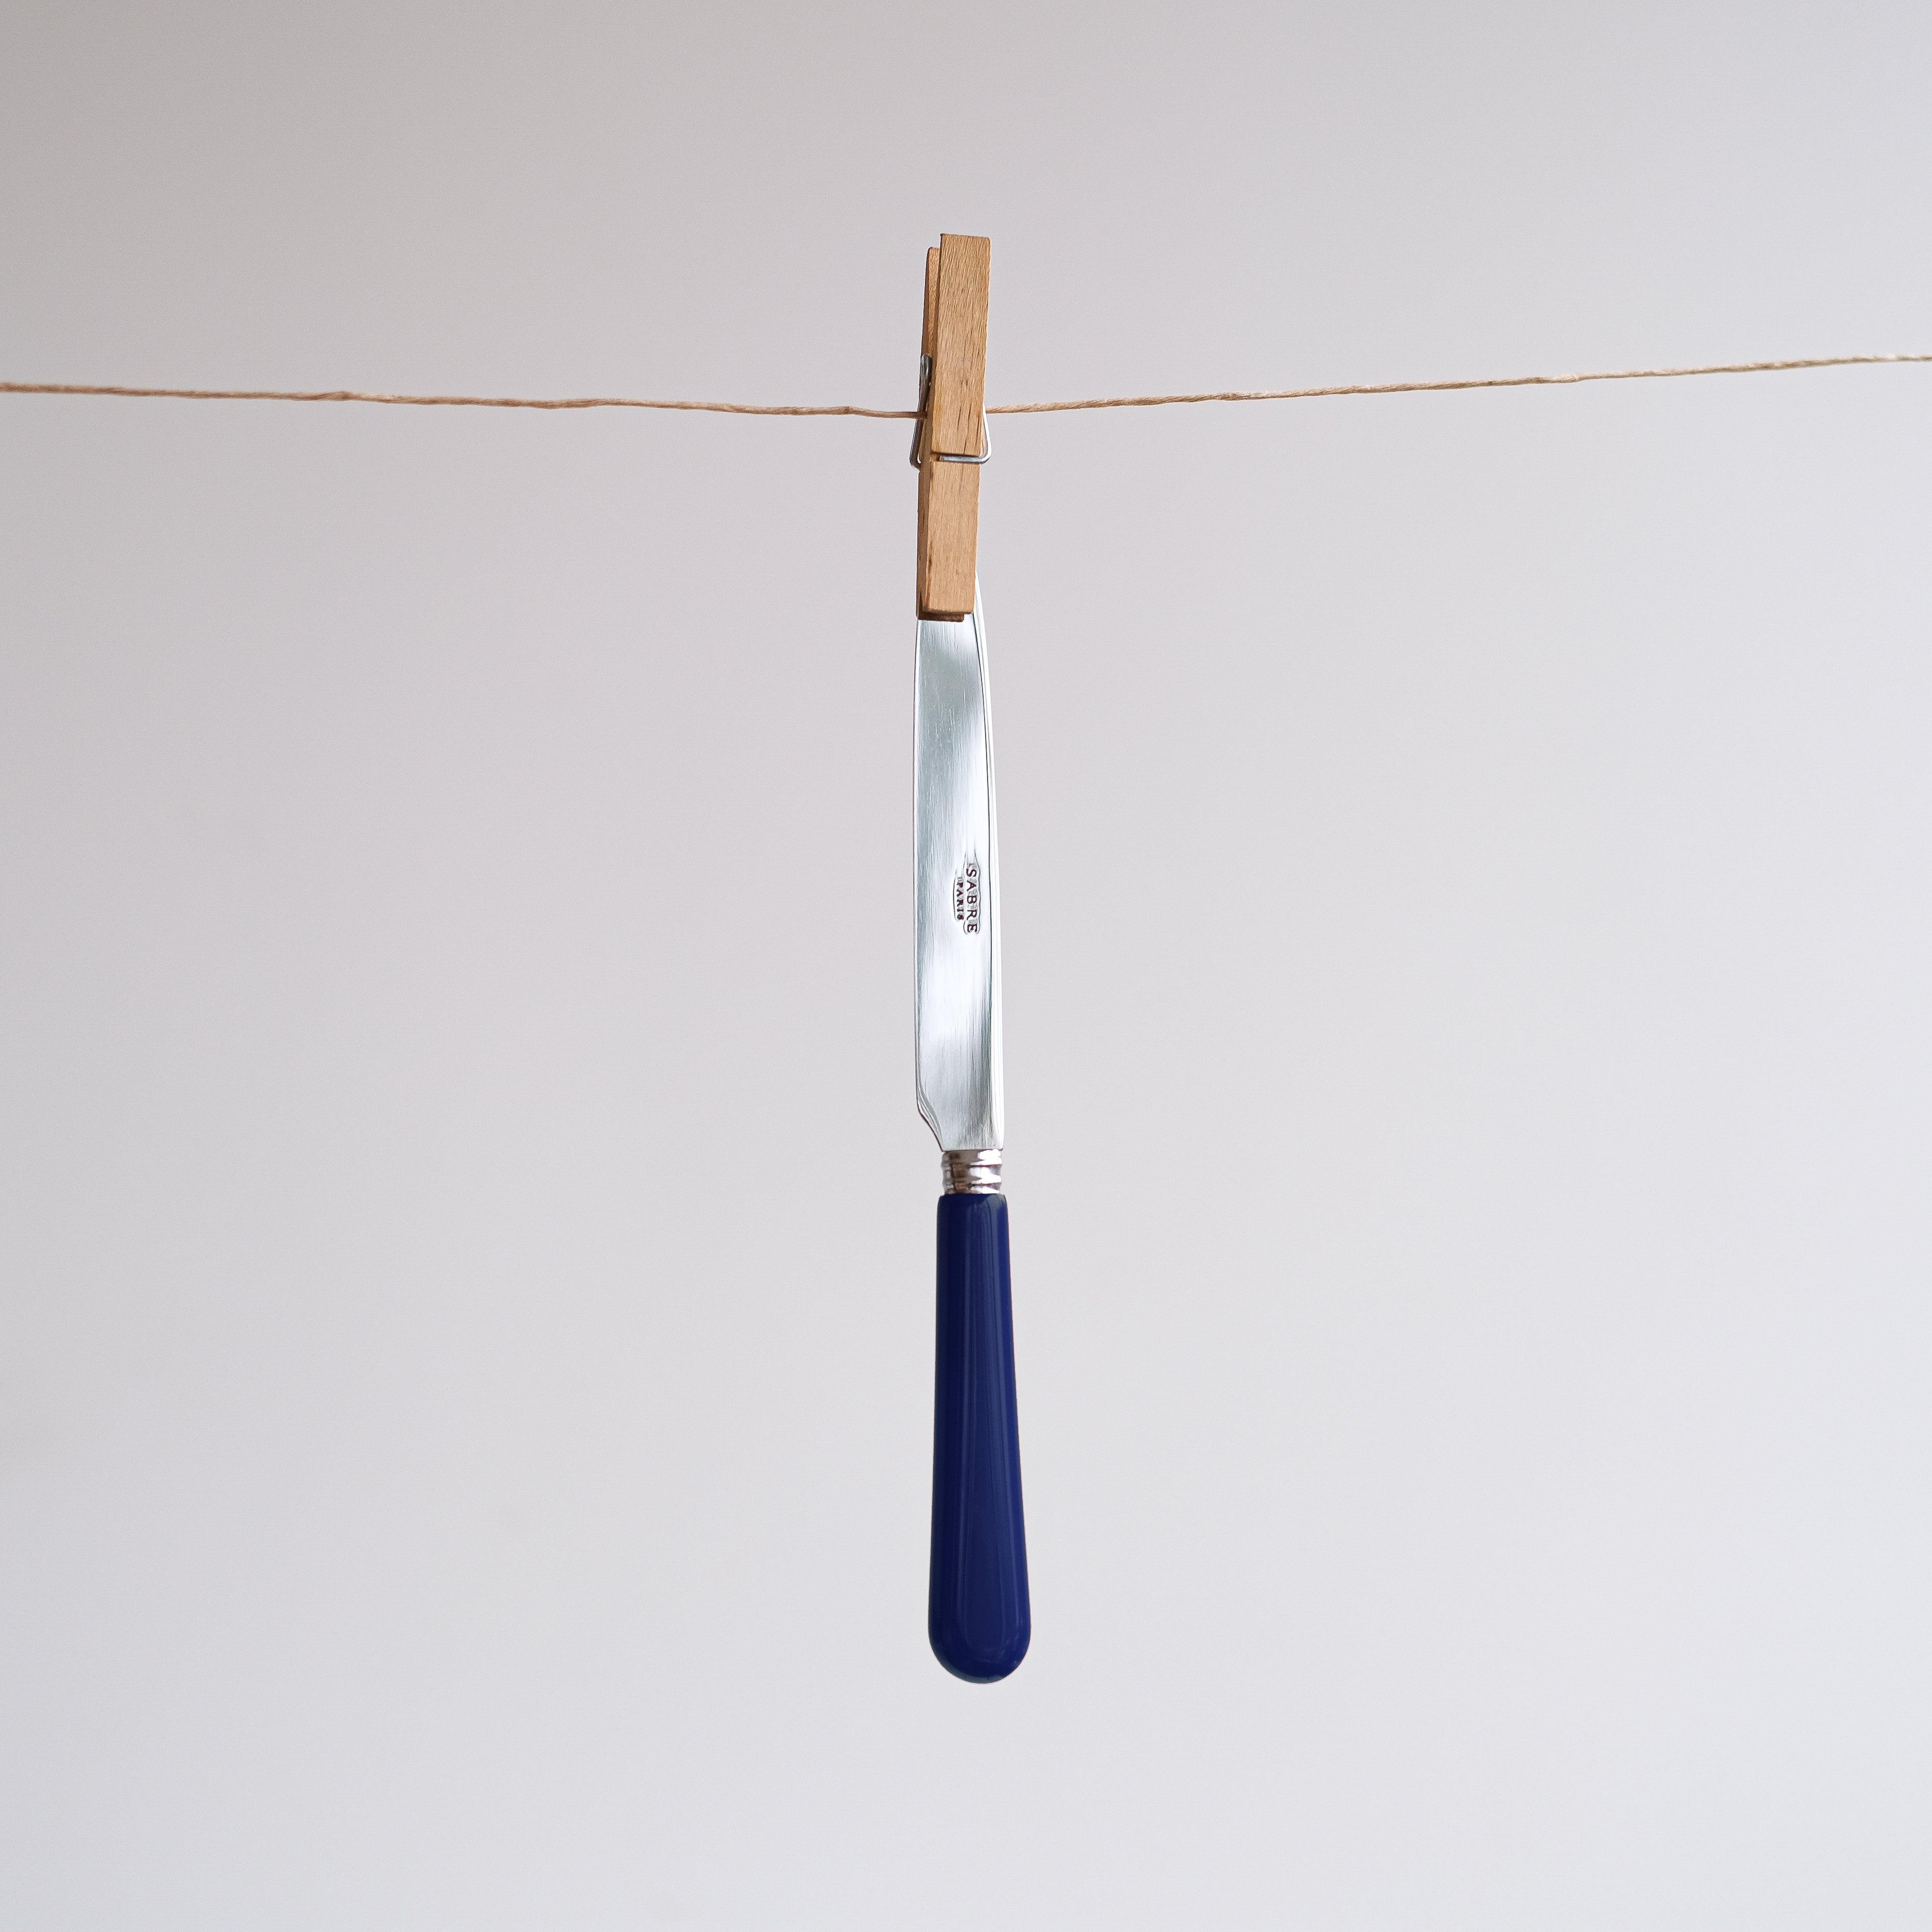 Navy Cutlery Set of 5: A stylish knife on a clothesline.